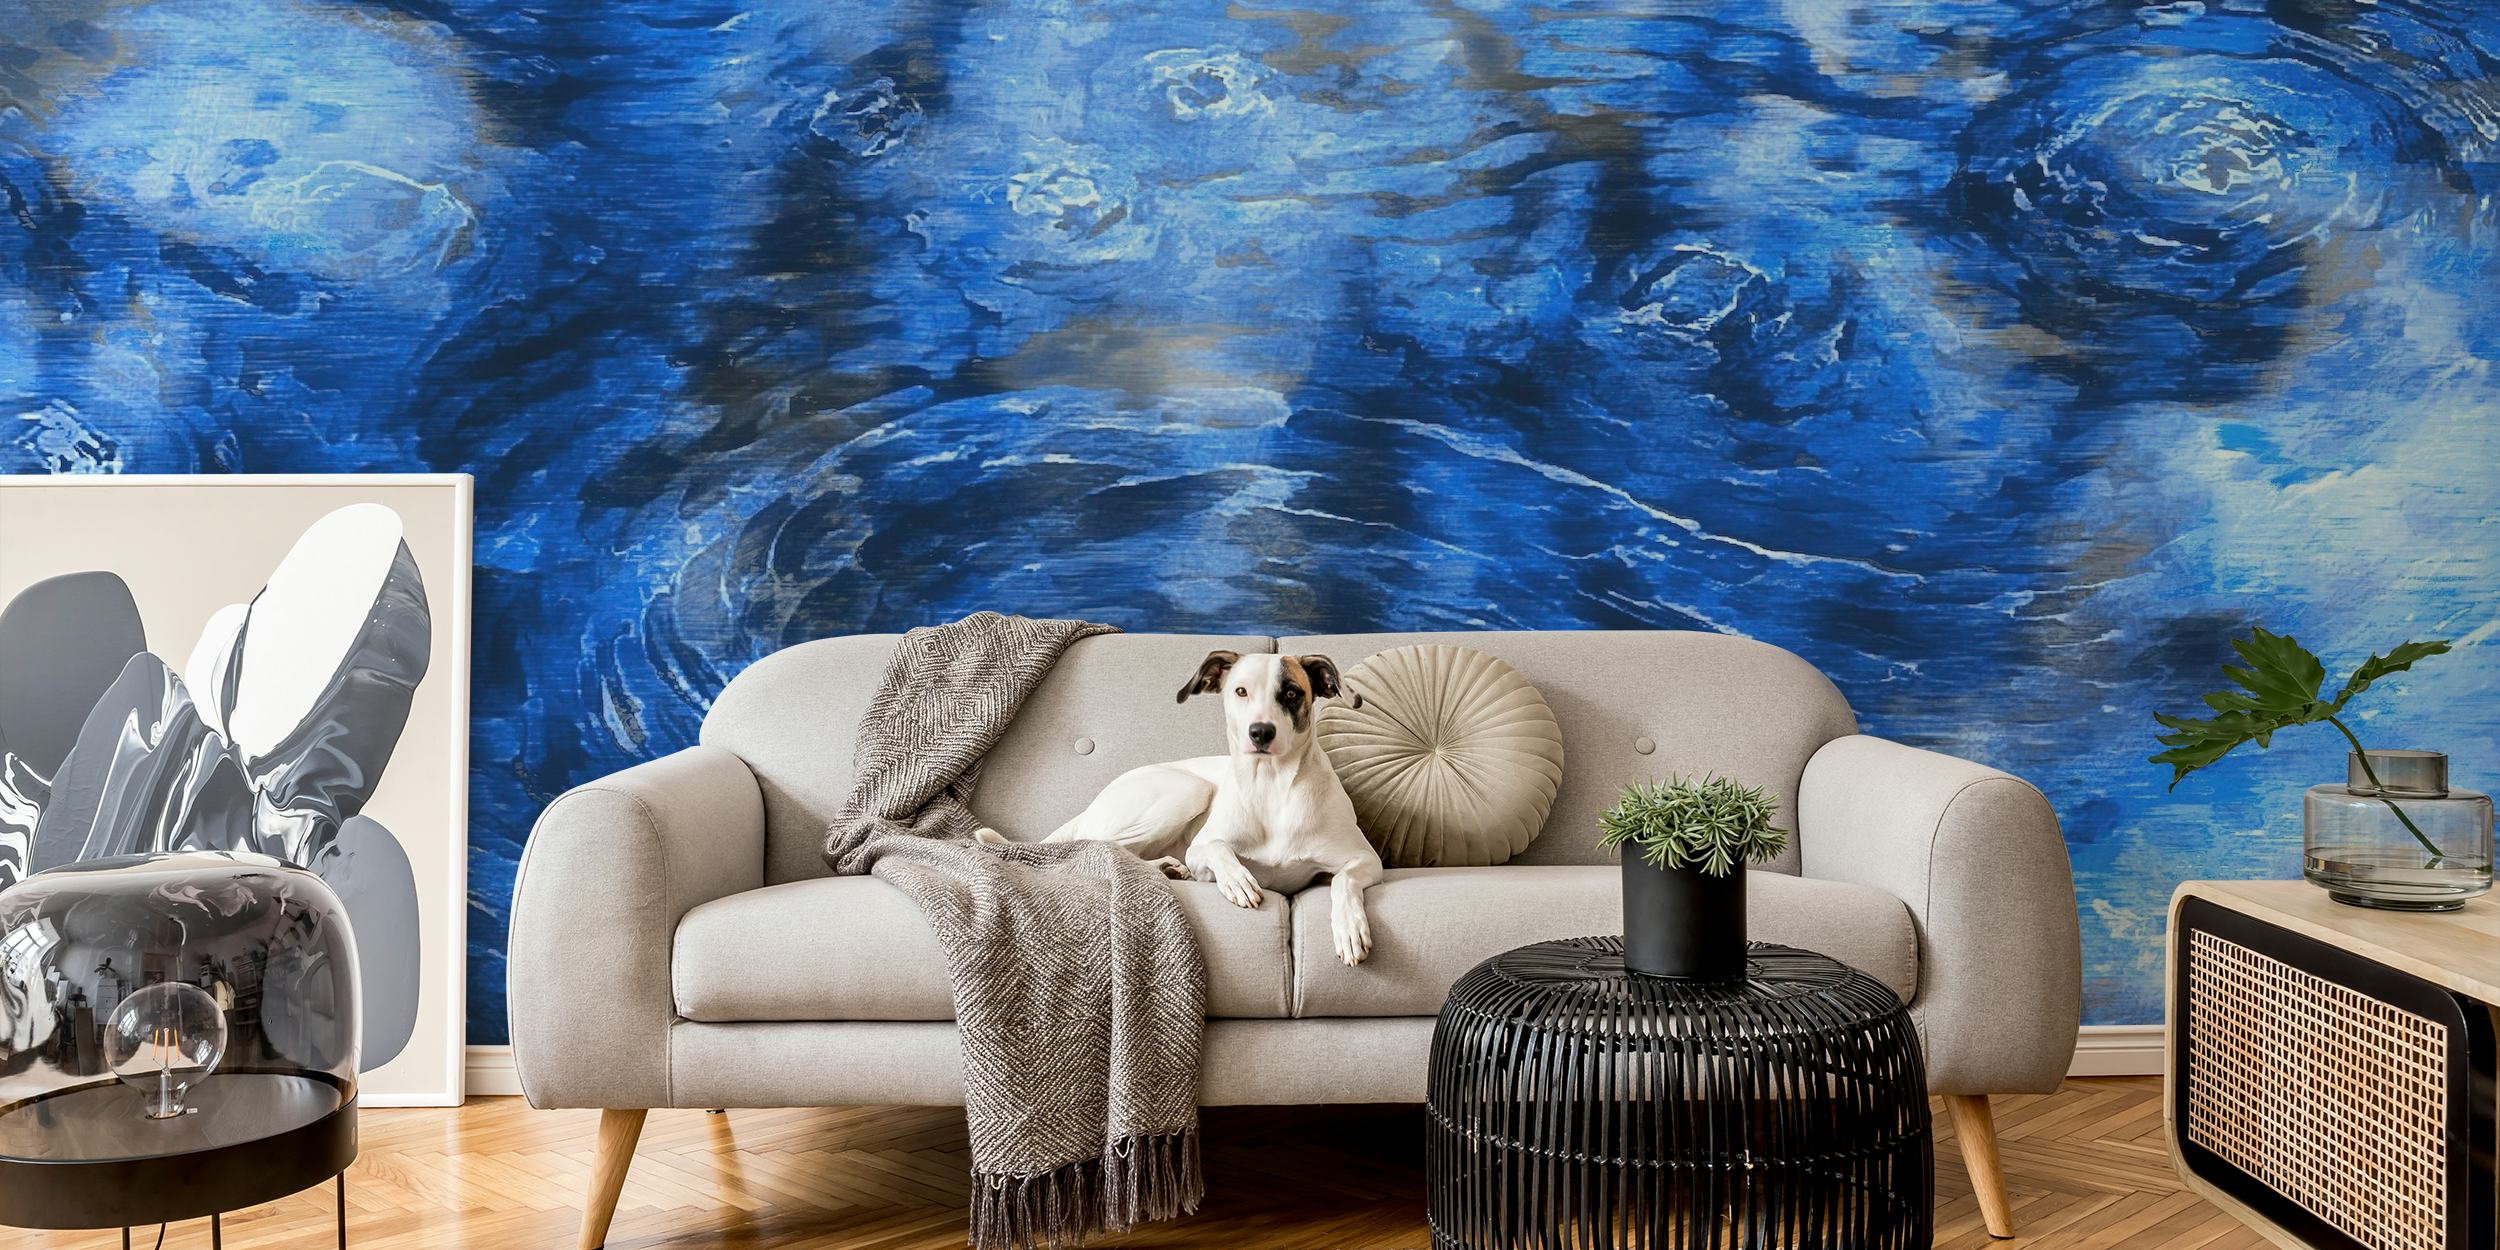 Wandbild „Van Gogh Clouds“ im impressionistischen Stil mit wirbelnden blauen und weißen Mustern